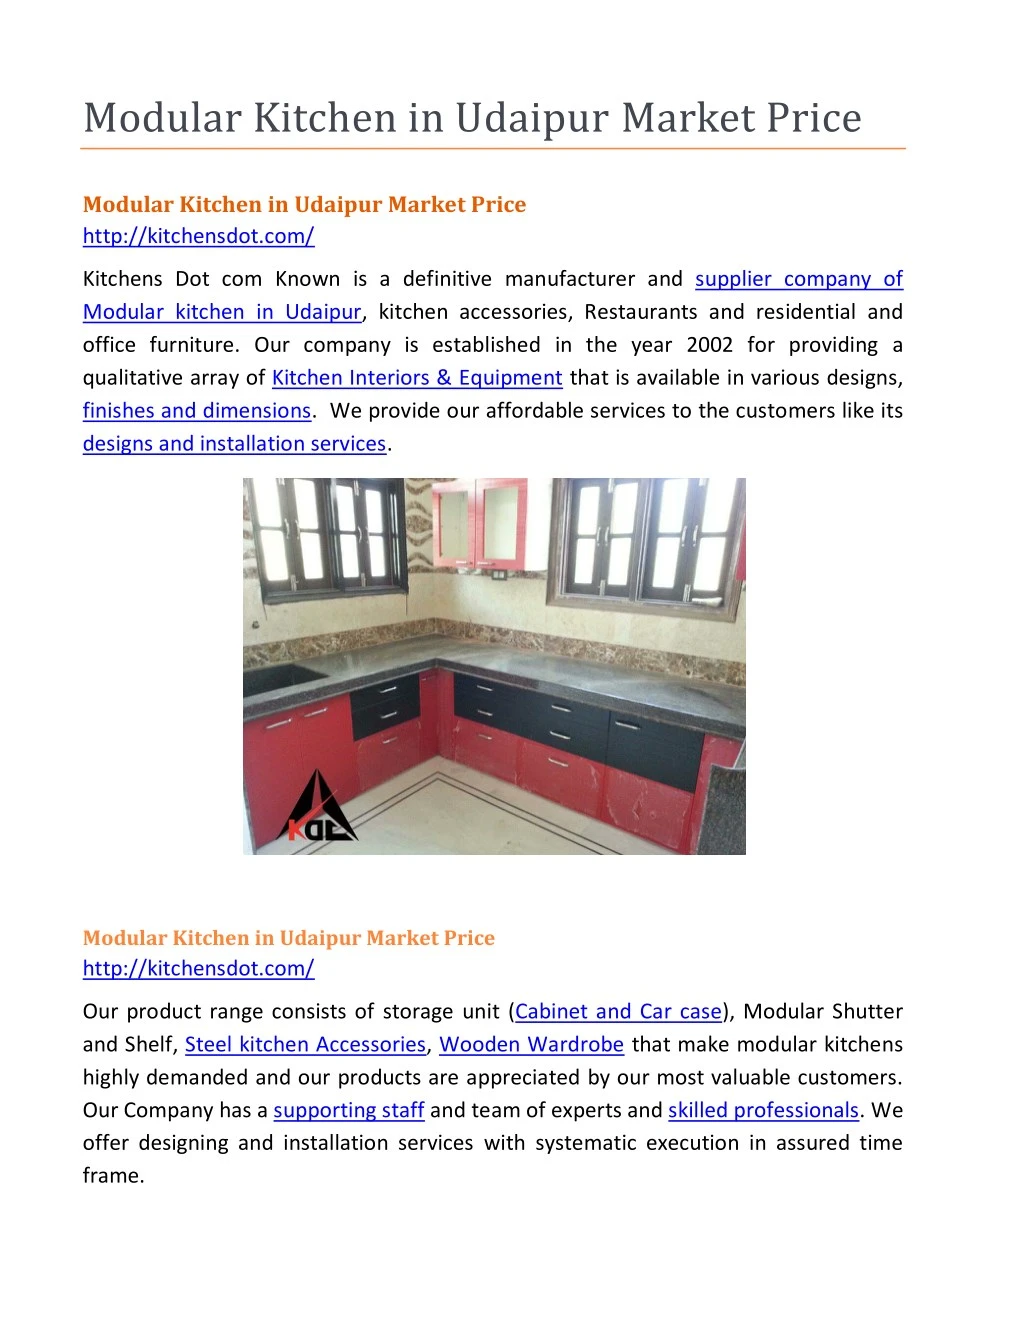 modular kitchen in udaipur market price